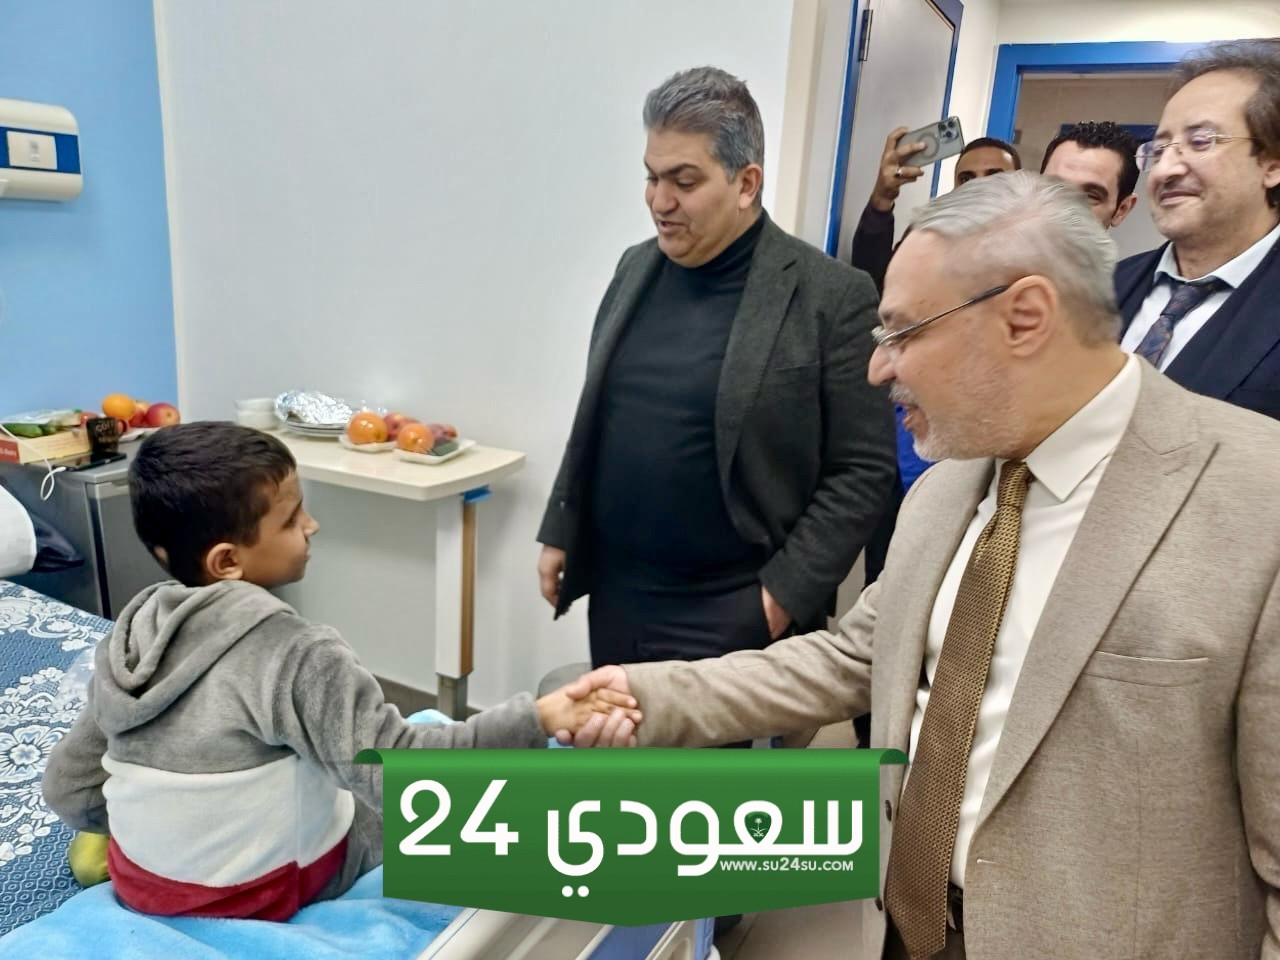 رئيس جامعة طنطا يزور مصابى غزة فى المستشفيات